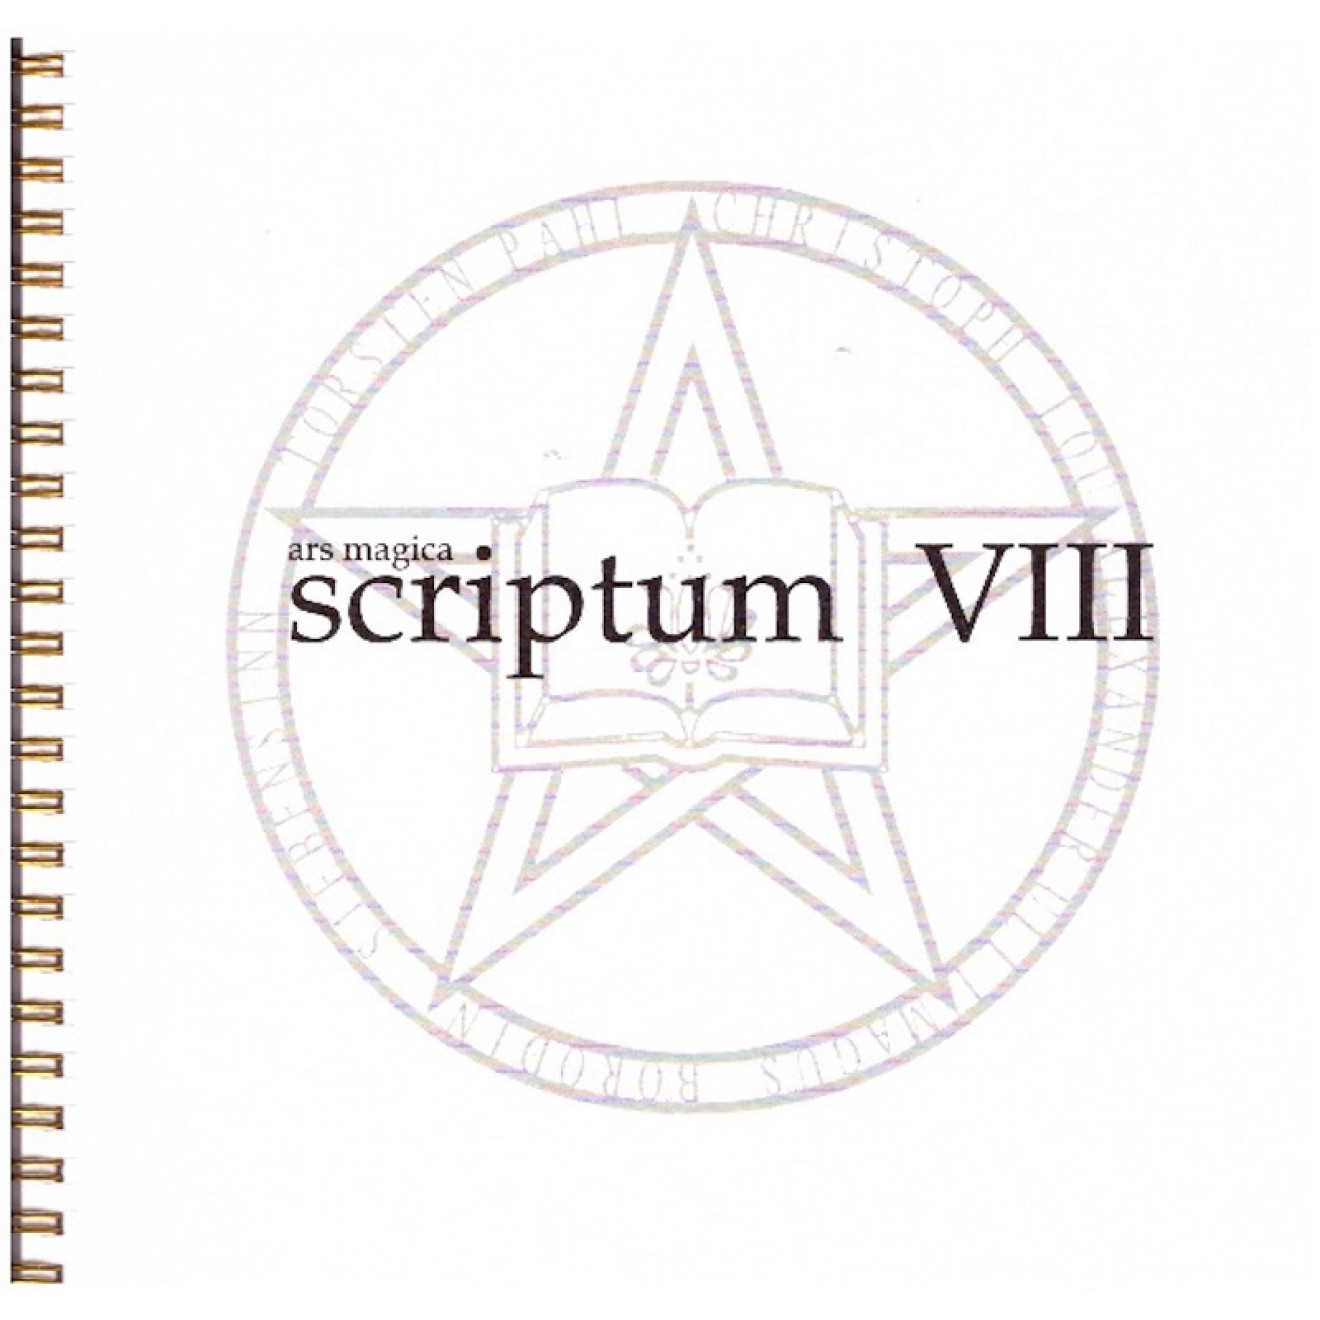 scriptum VIII